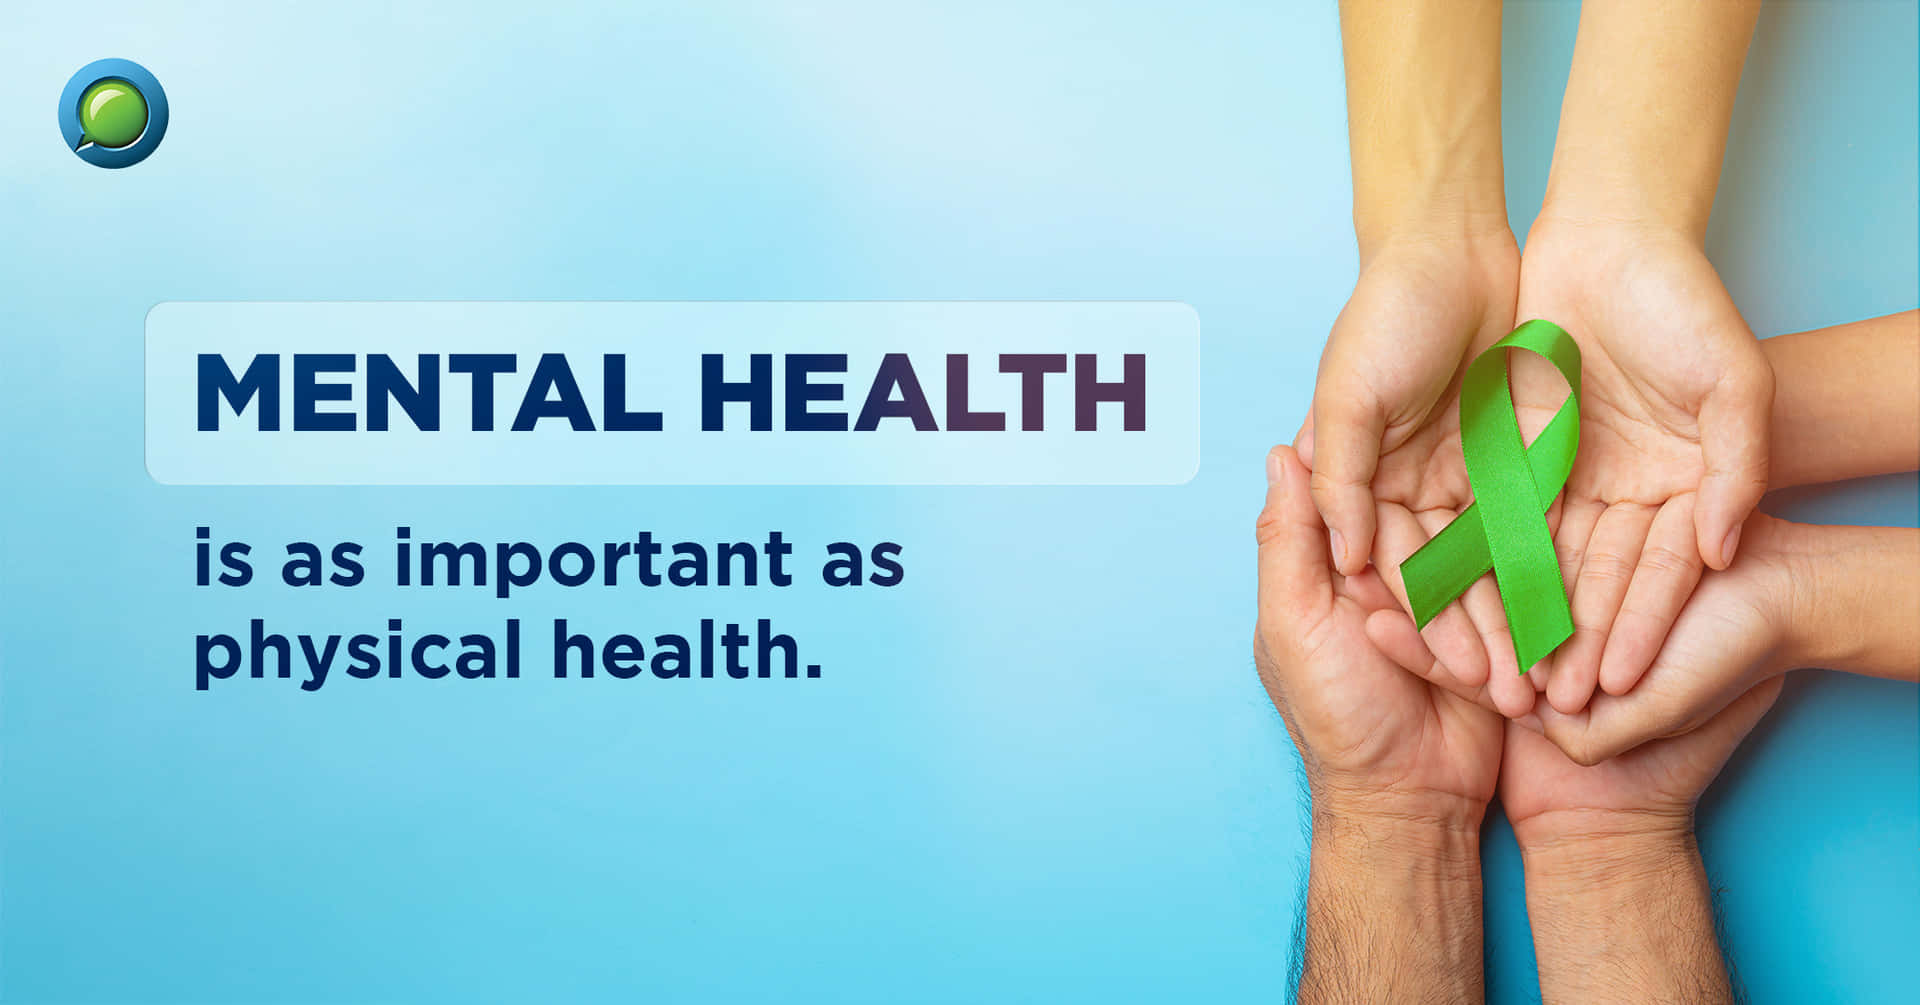 Diepsychische Gesundheit Ist Genauso Wichtig Wie Die Körperliche Gesundheit.